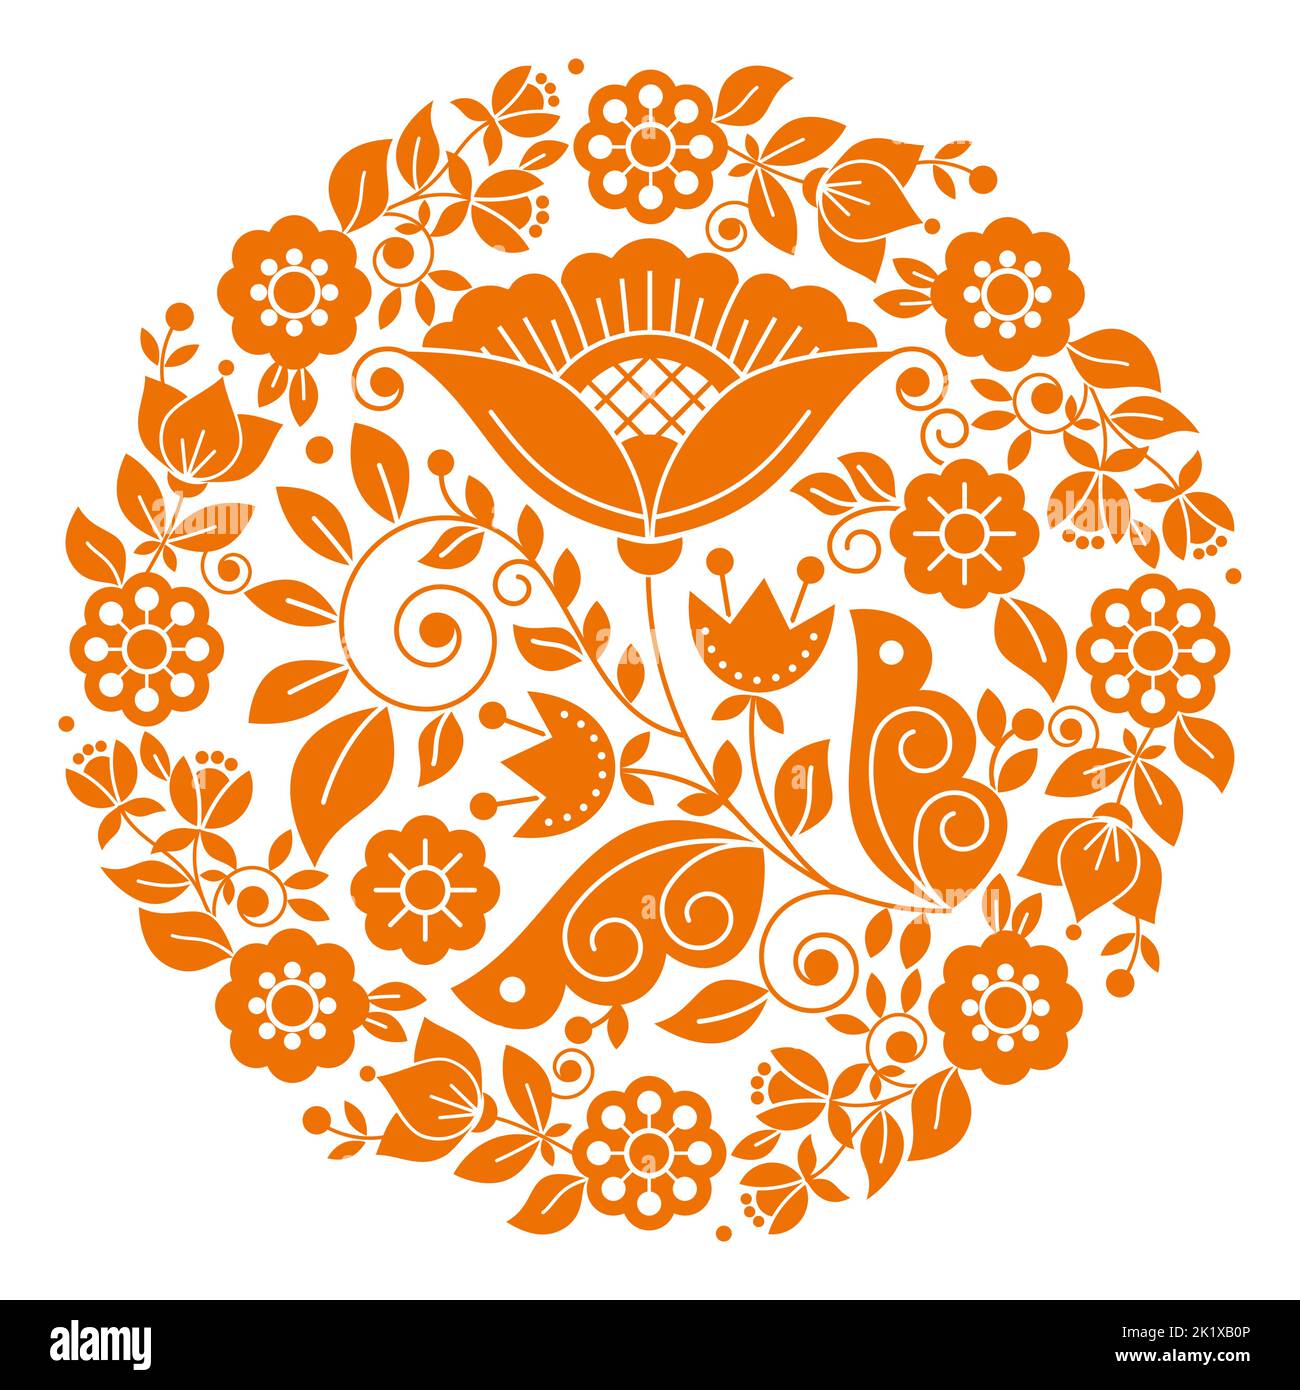 Skandinavische Volkskunst Vektor floralen Mandala orange Design Muster in Rahmen von der traditionellen Stickerei aus Schweden, Norwegen und Dänemark inspiriert Stock Vektor